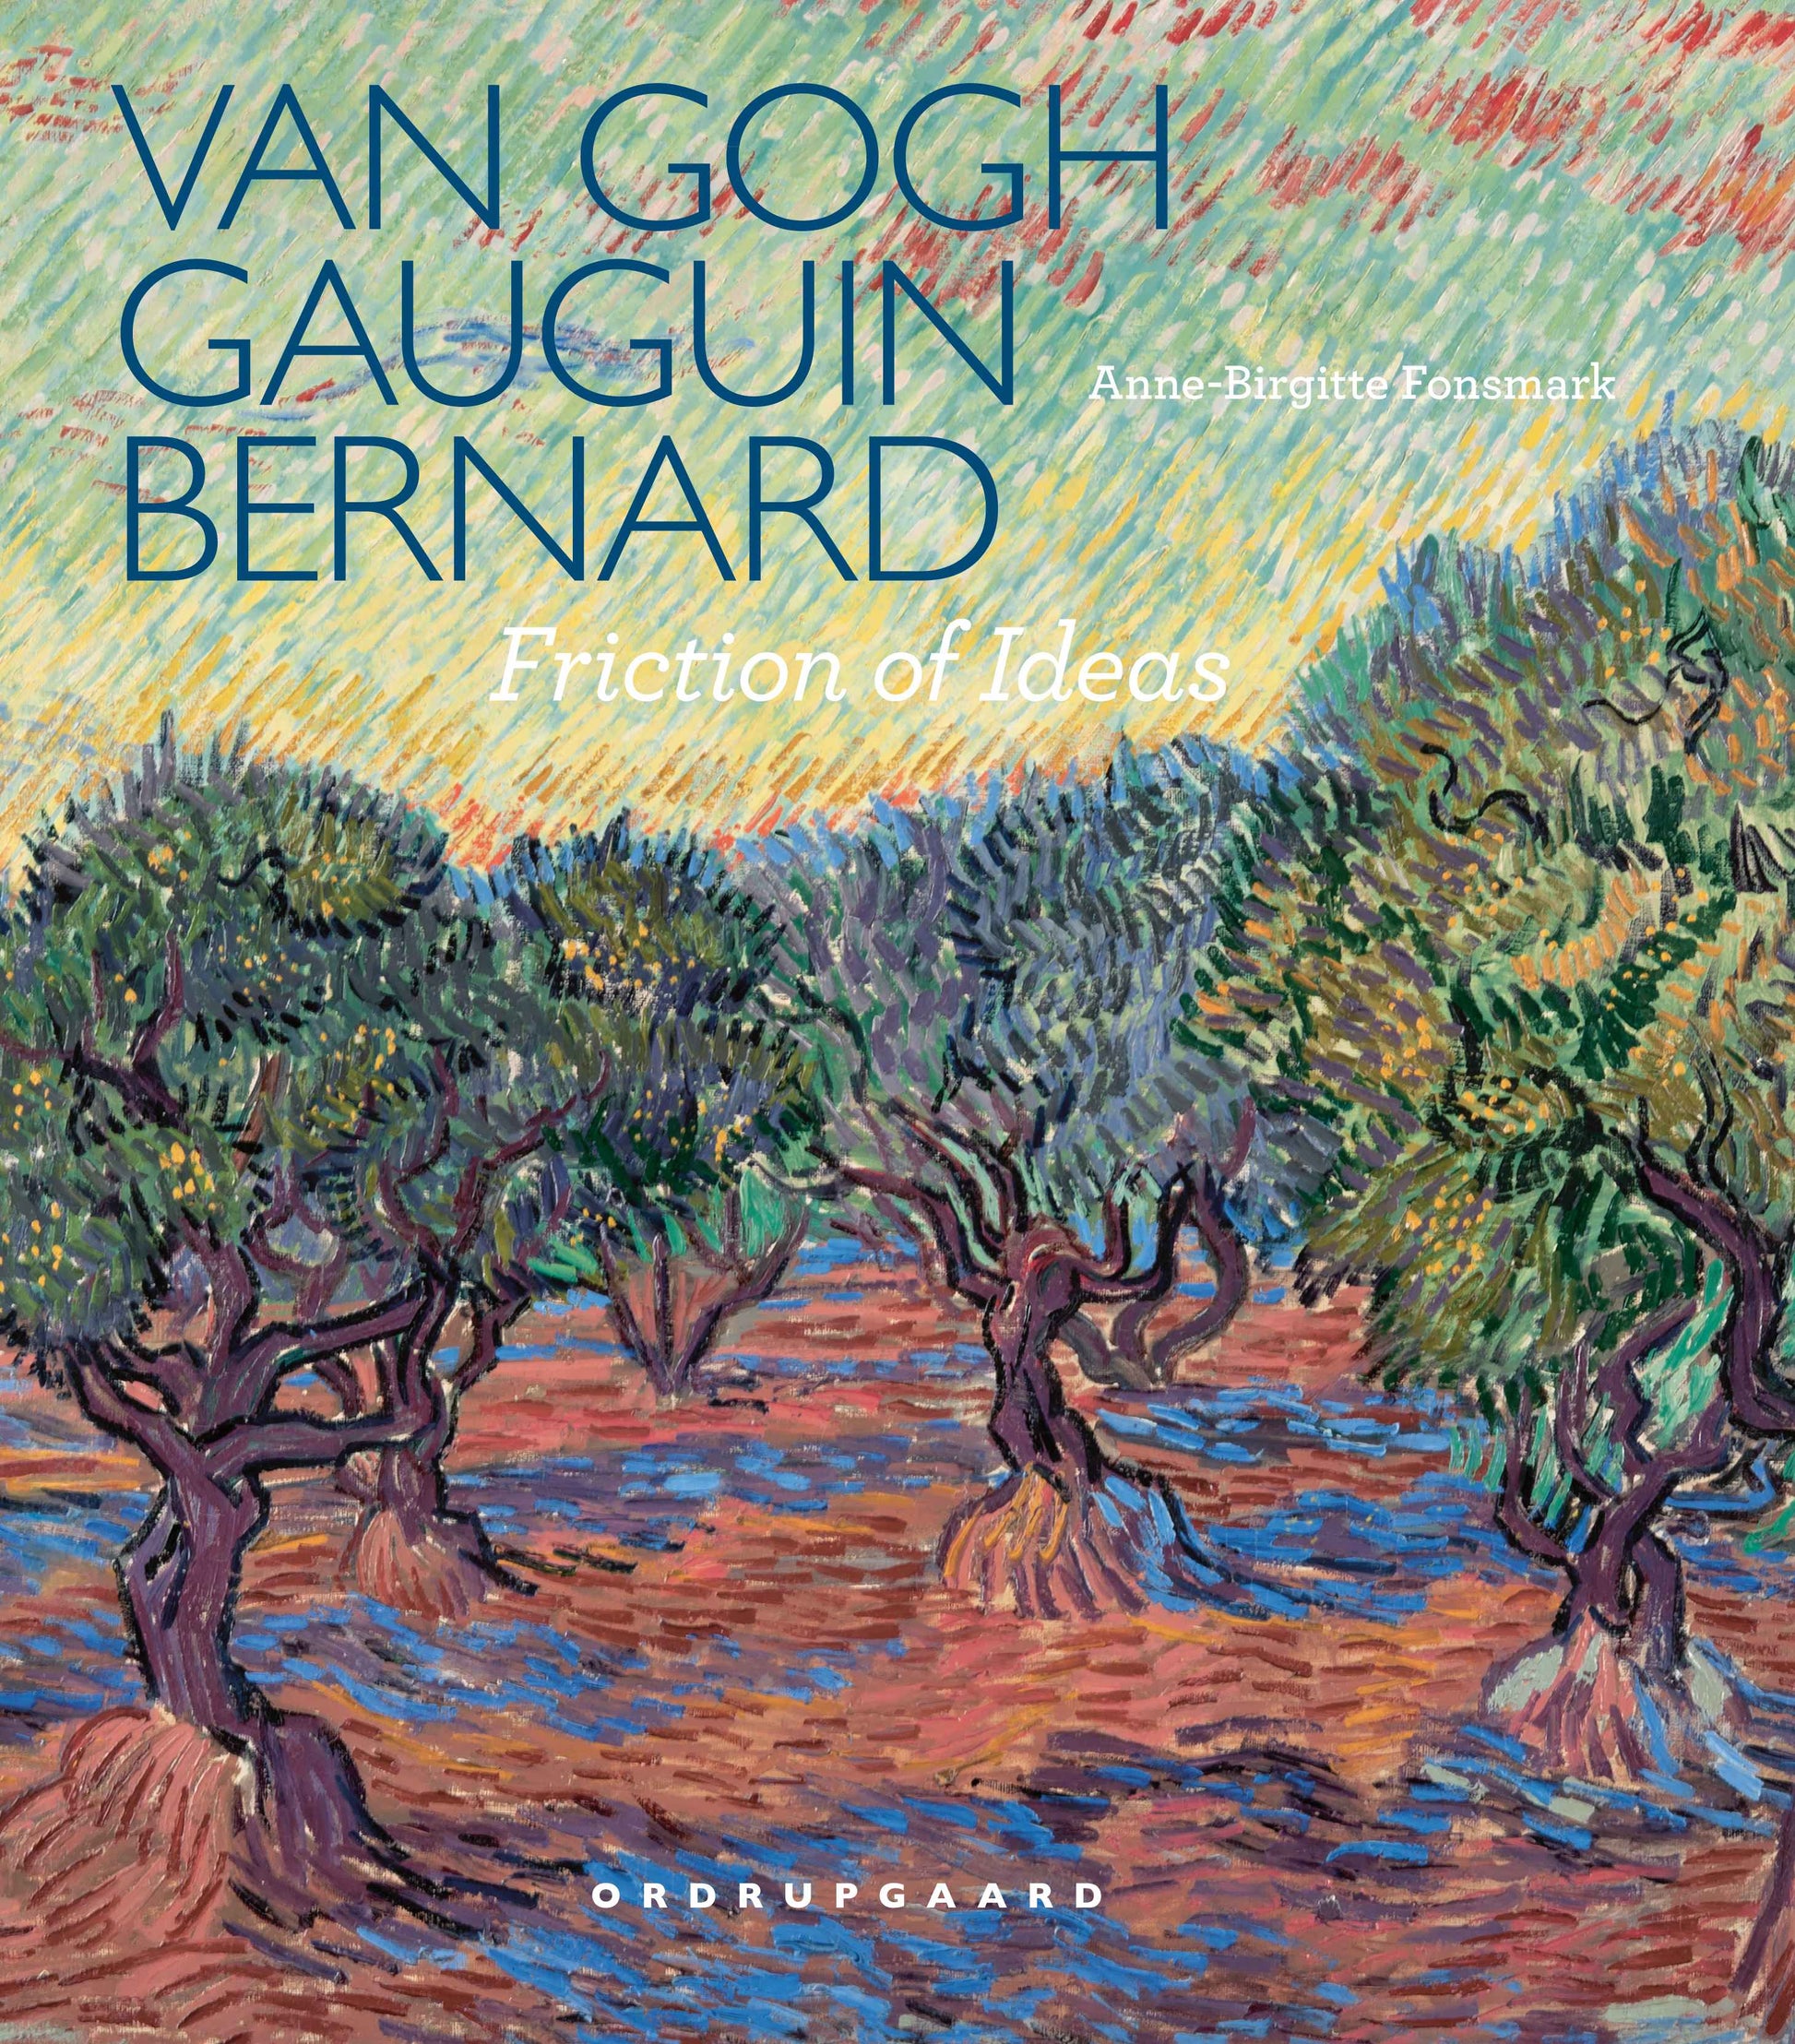 Van Gogh, Gauguin, Bernard. Friction of Ideas